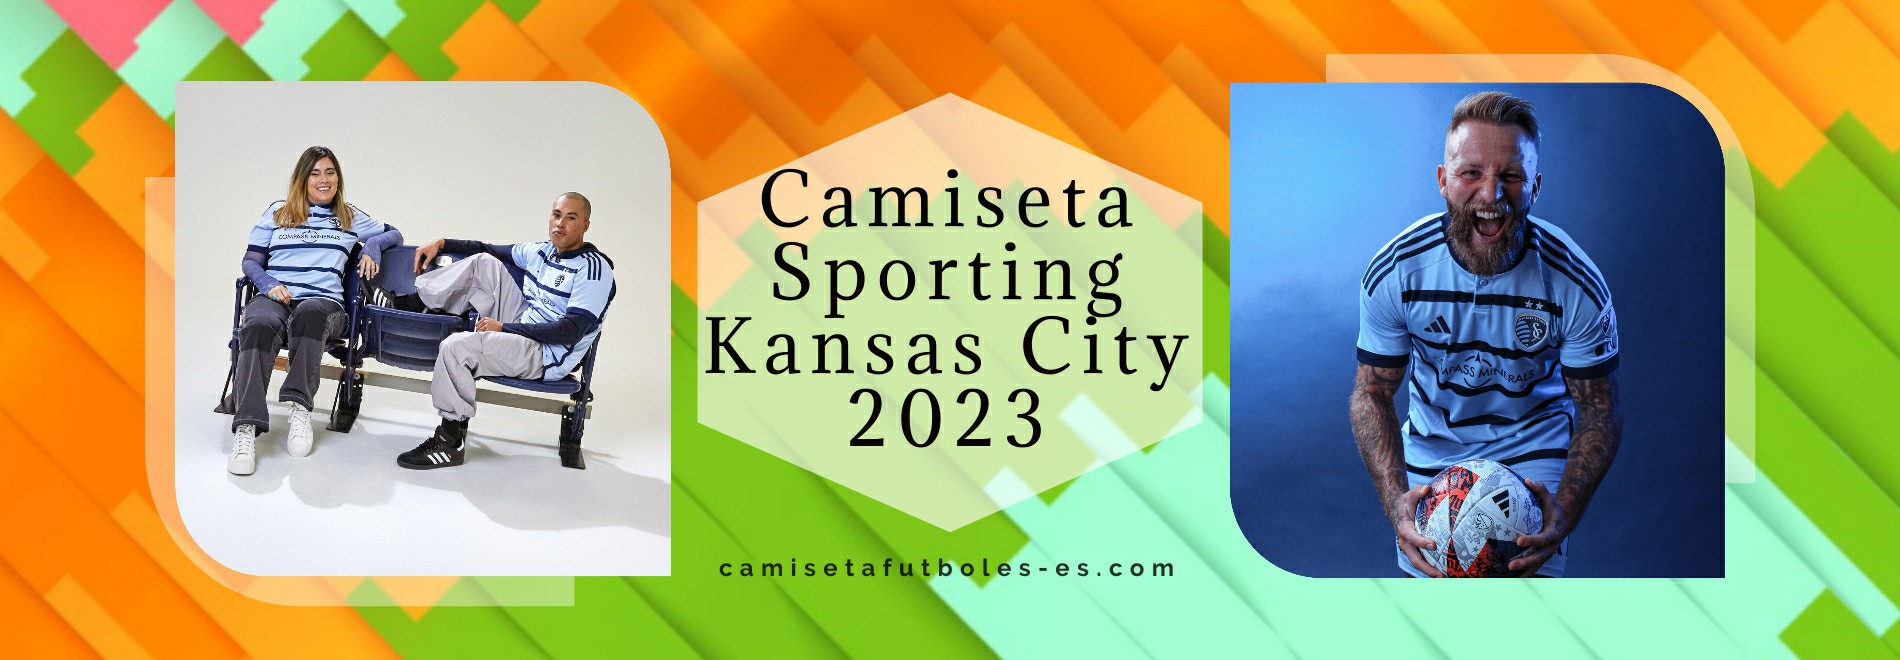 Camiseta Sporting Kansas City 2023-2024